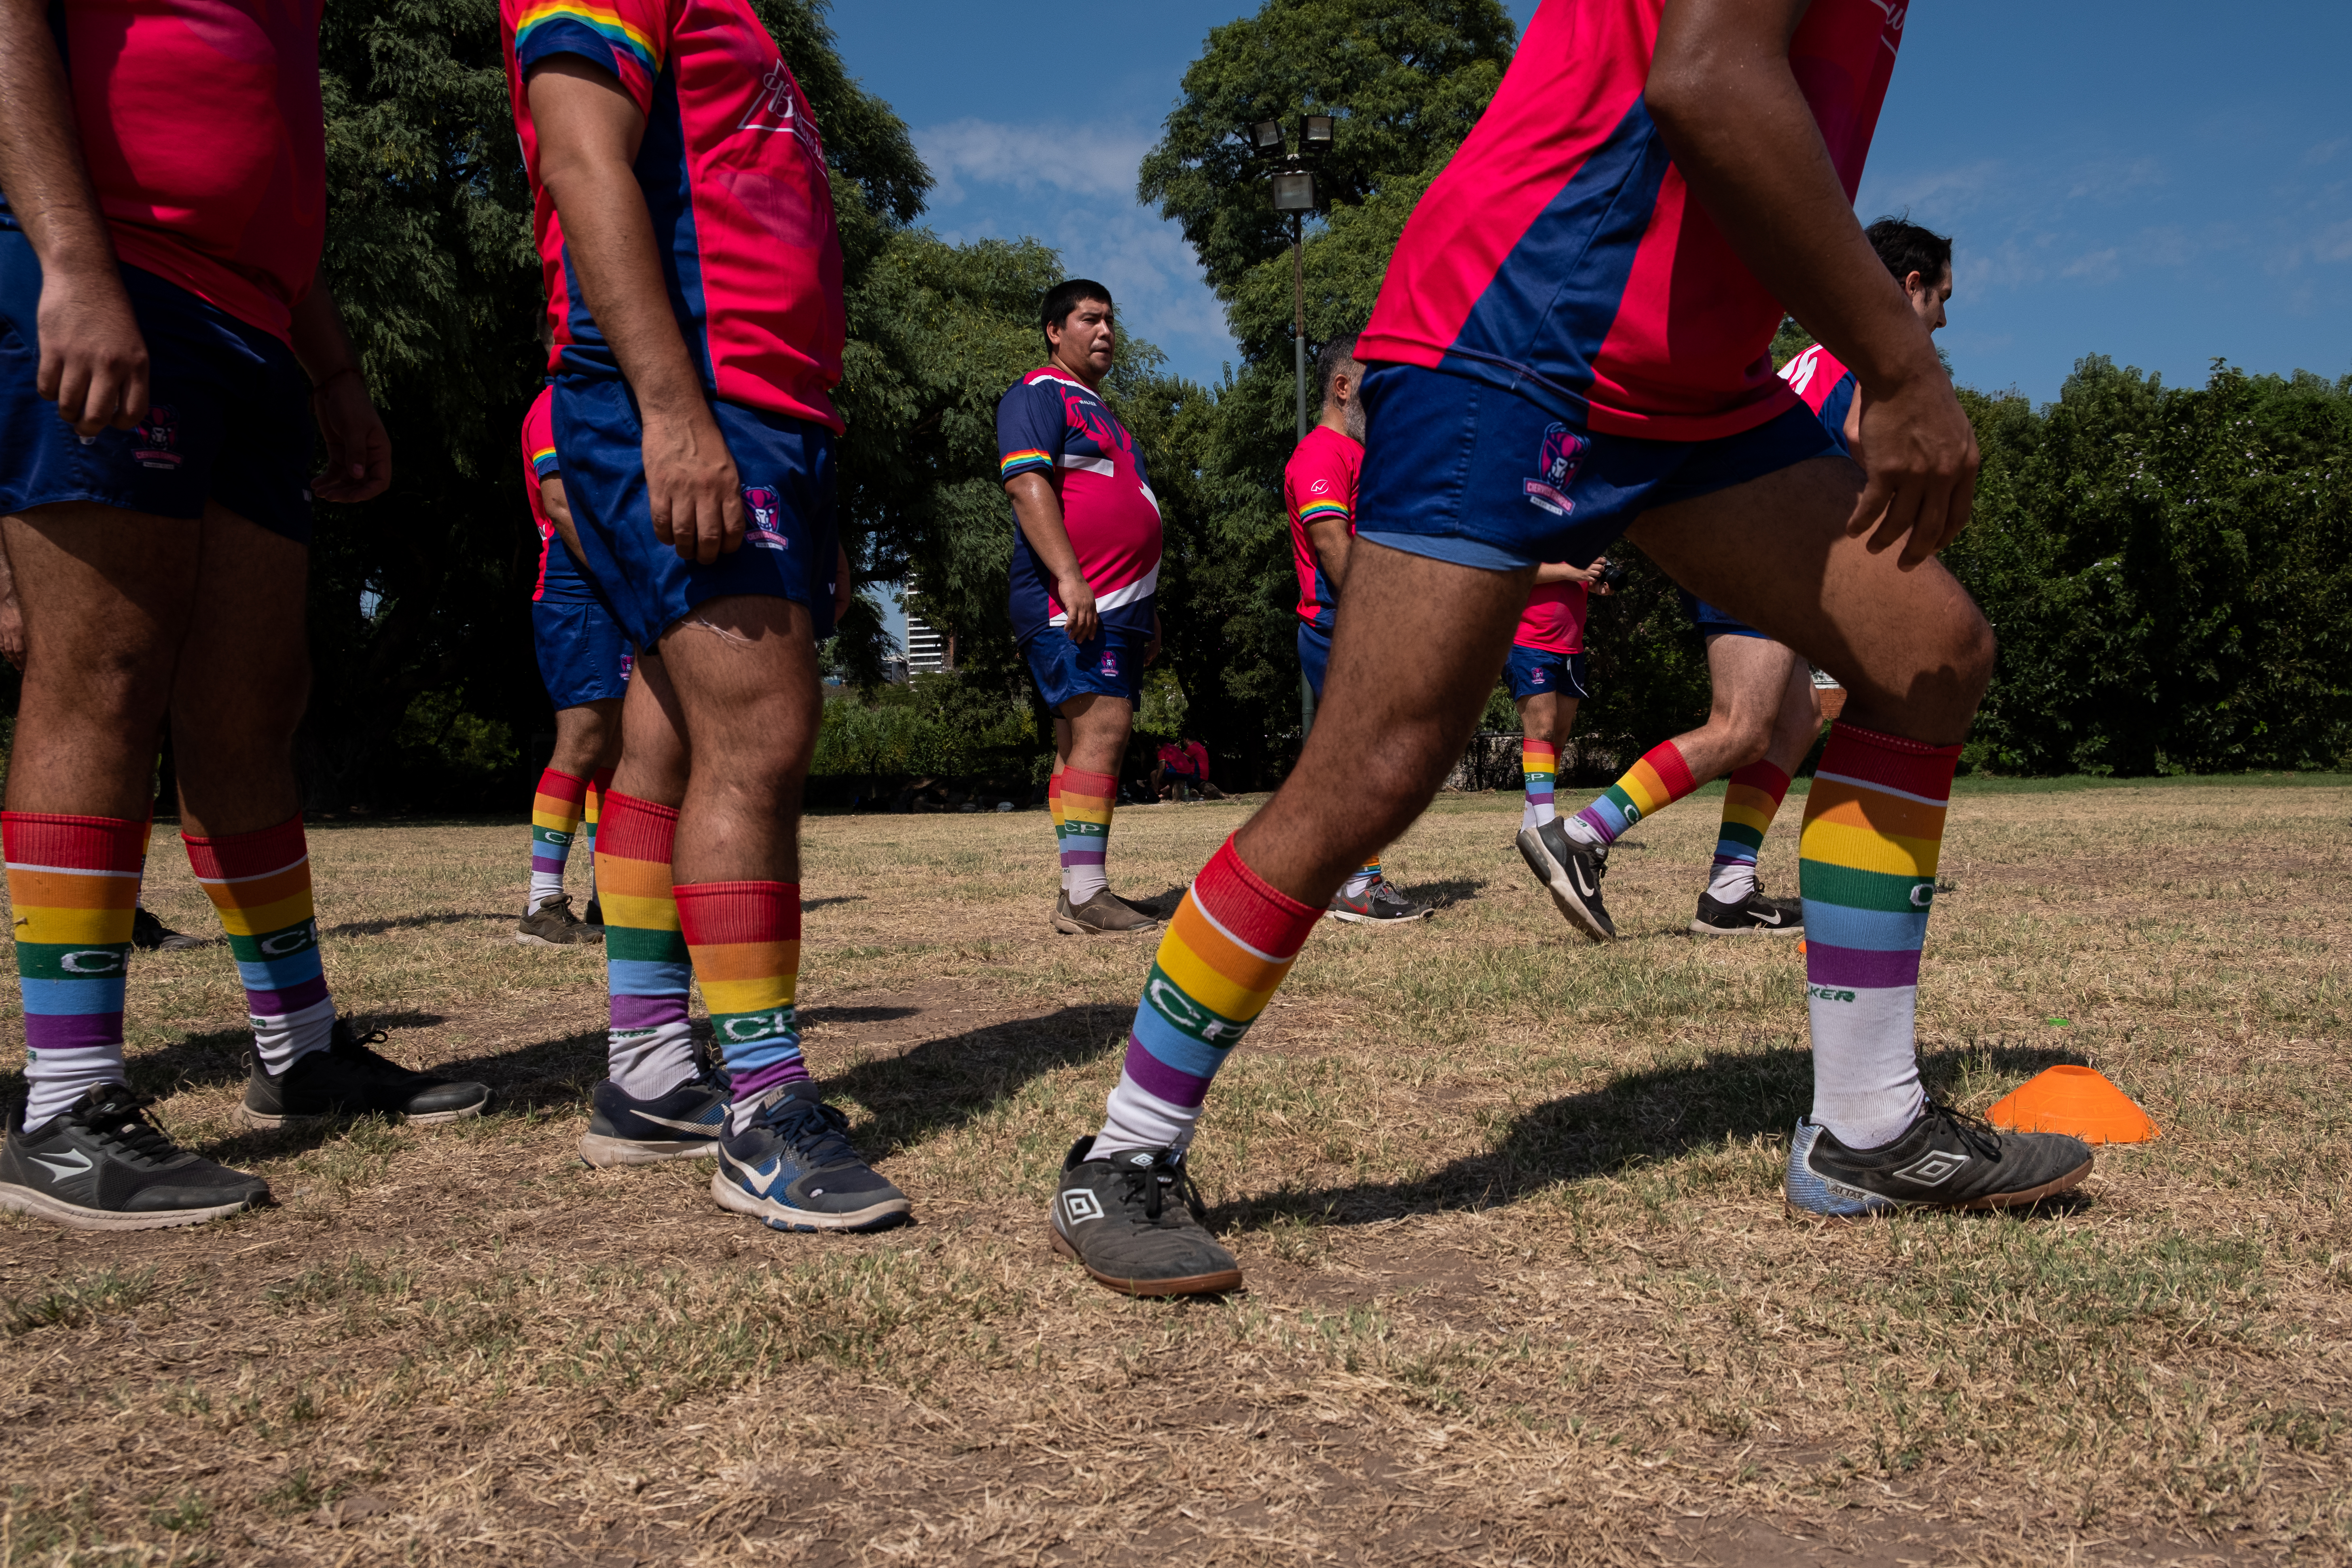 Ciervos Pampas RC El club de rugby argentino que apuesta por la diversidad sexual para transformar el deporte América Futura EL PAÍS América foto imagen foto